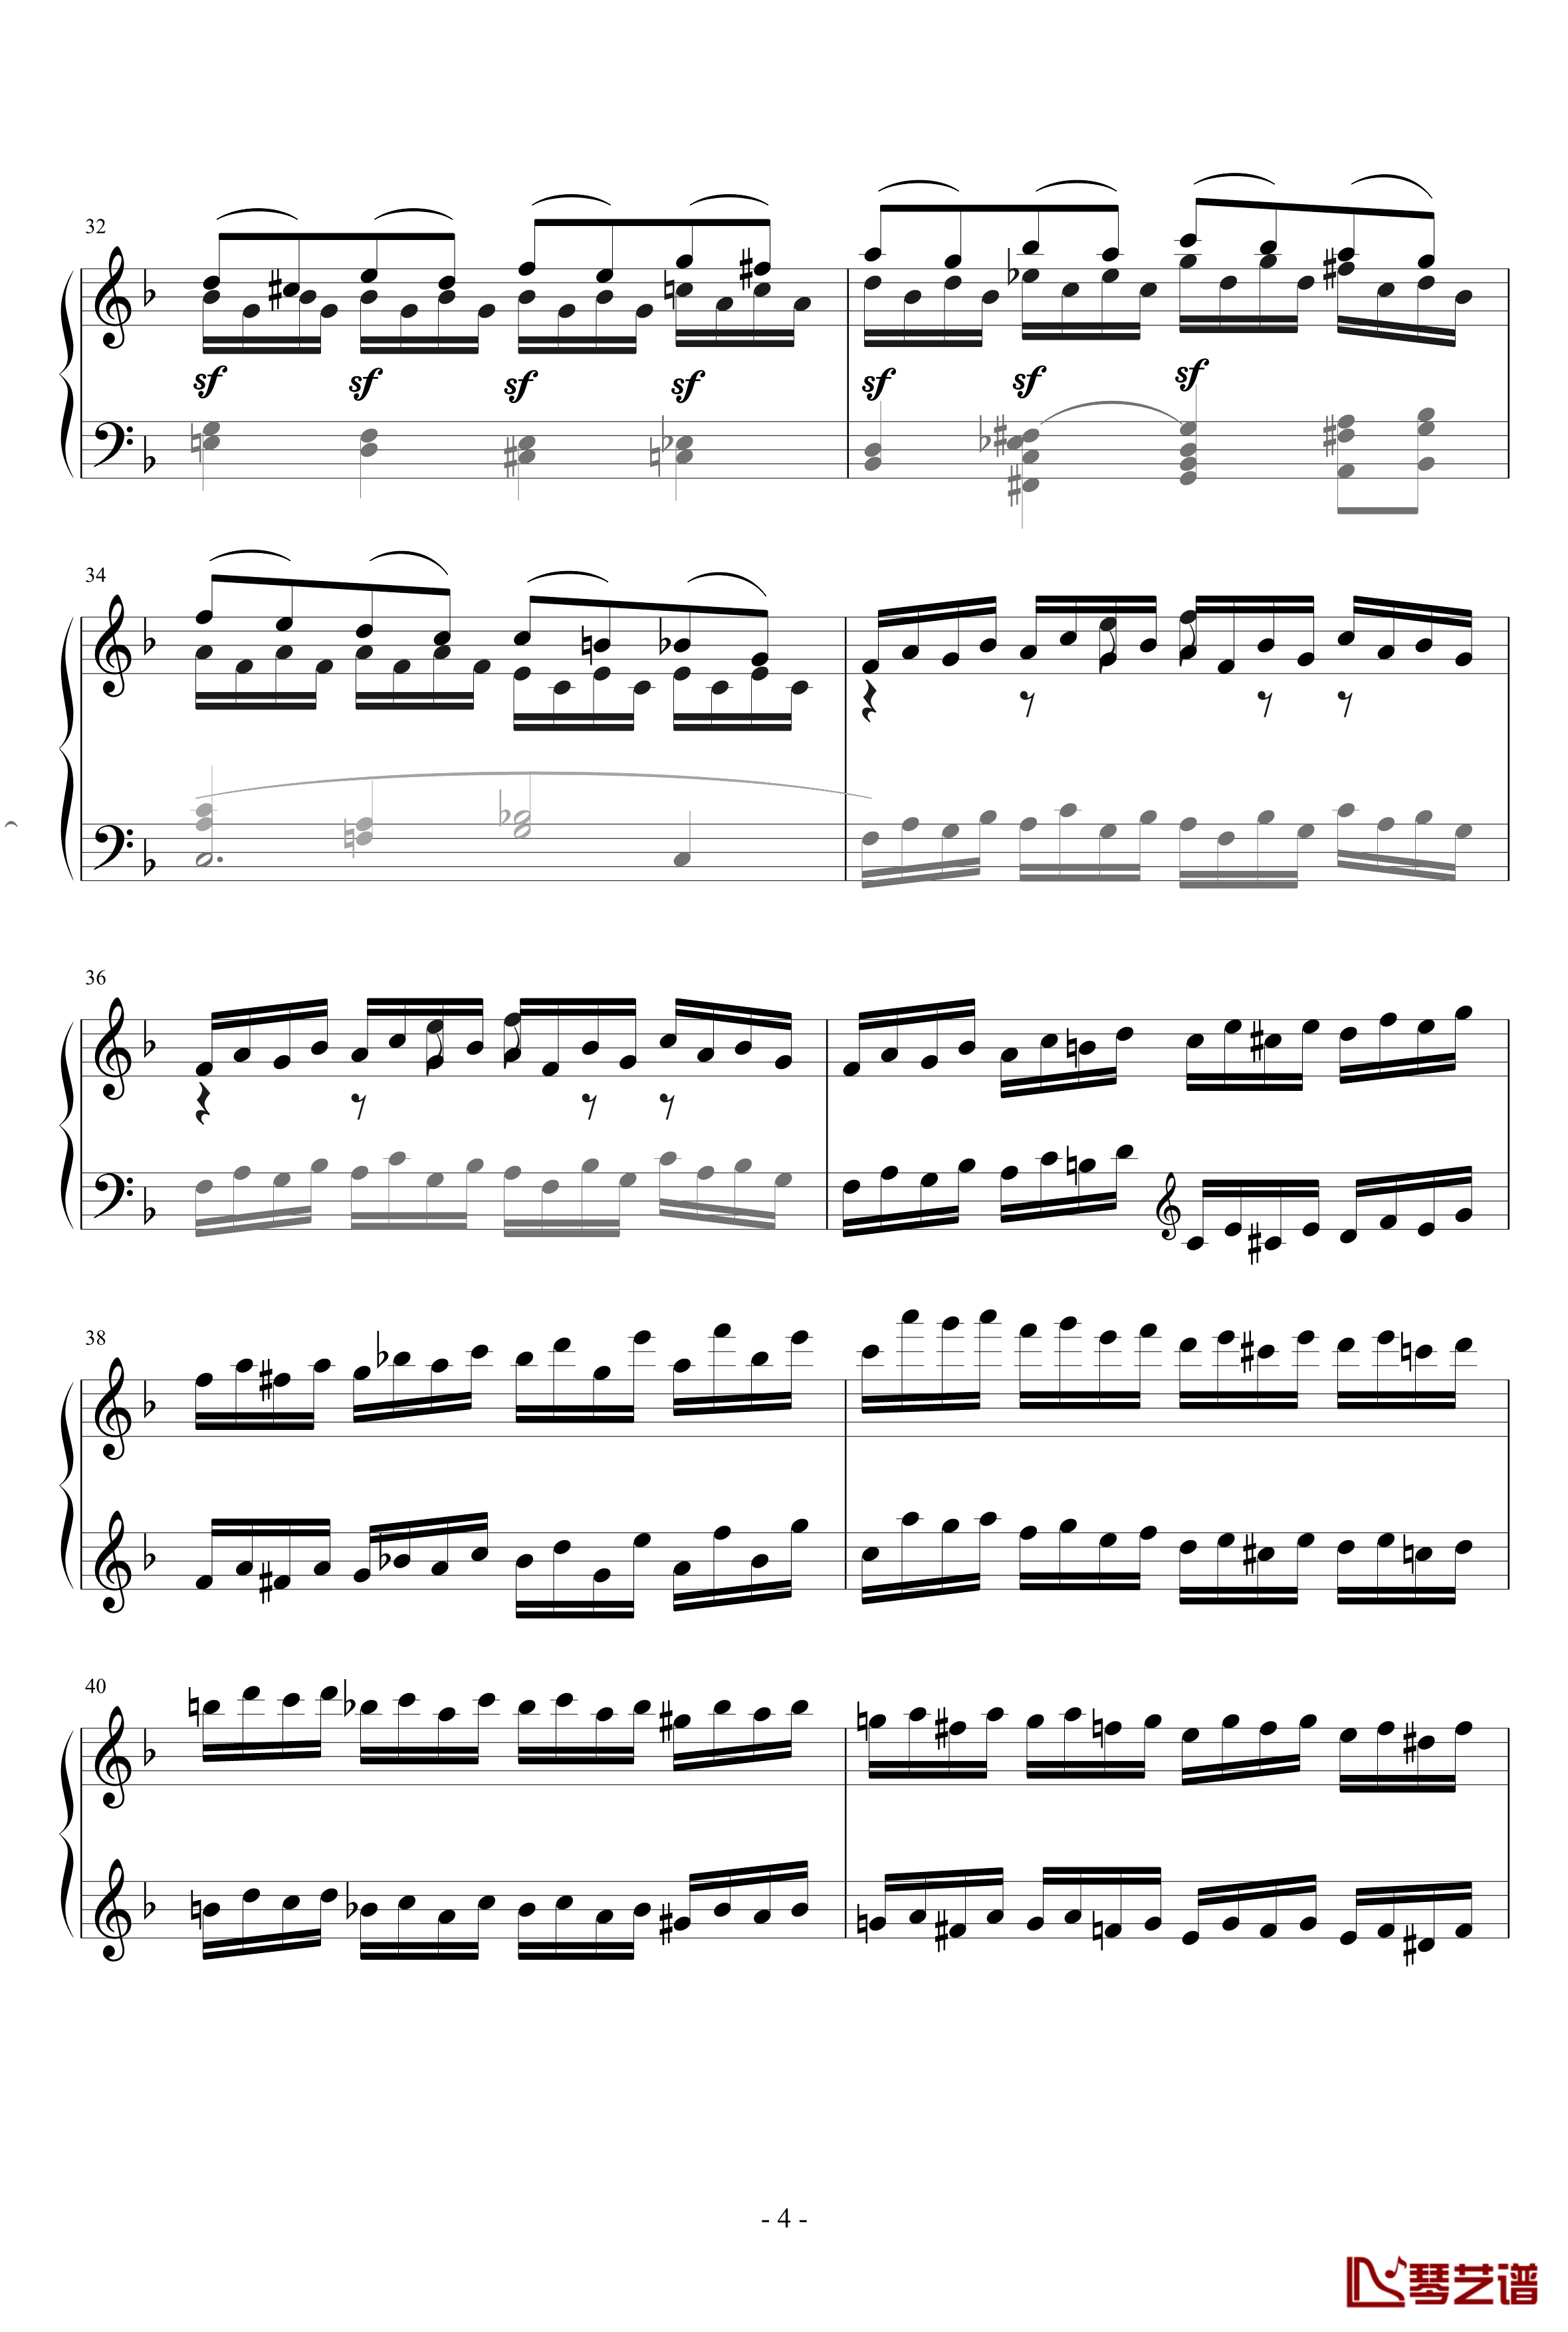 克列门蒂练习曲No.13钢琴谱-克来门蒂4